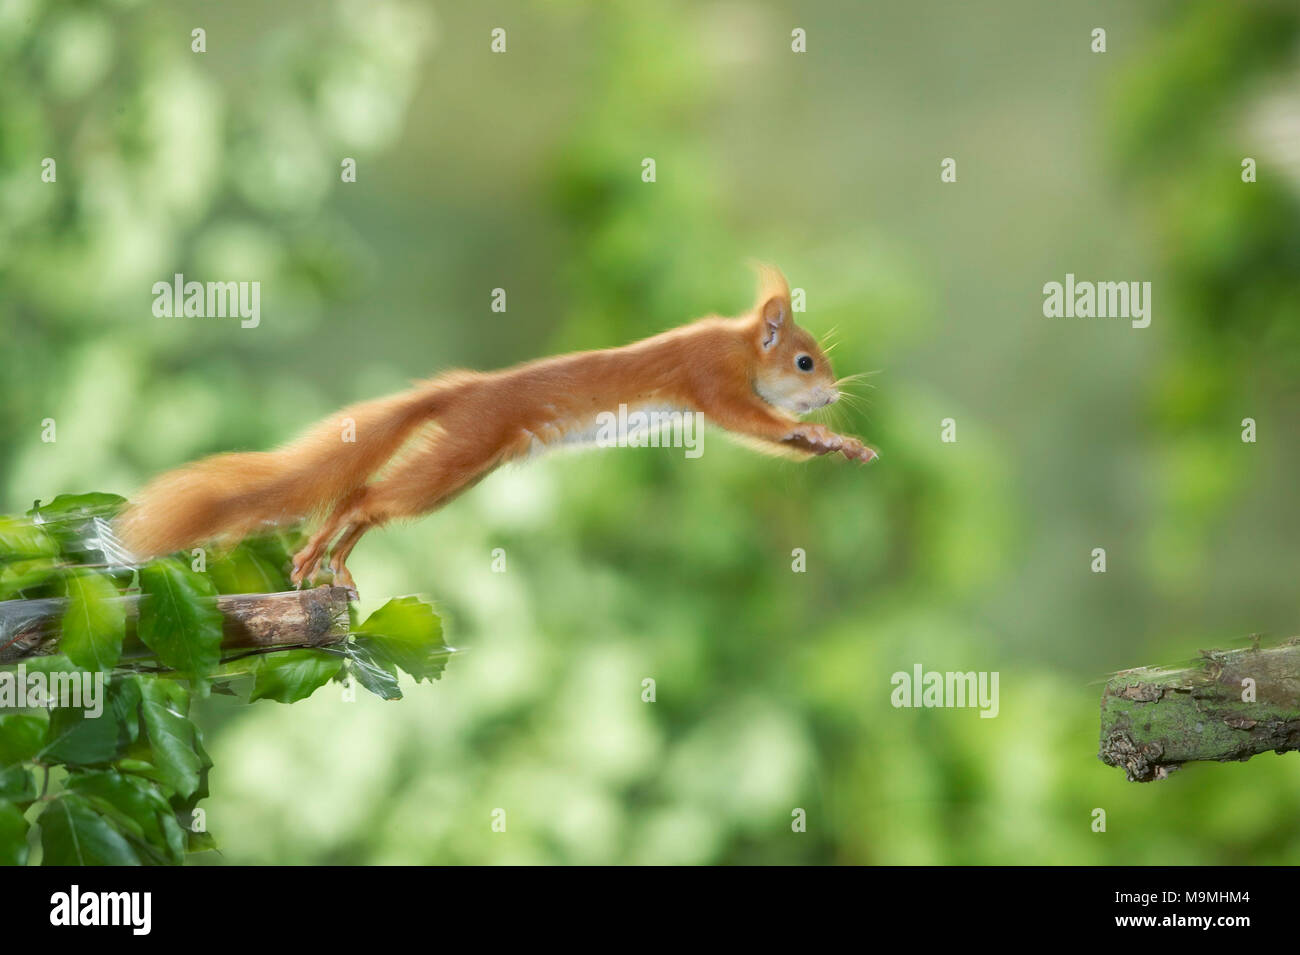 L'Écureuil roux (Sciurus vulgaris) sautant d'une branche à l'autre. Allemagne Banque D'Images